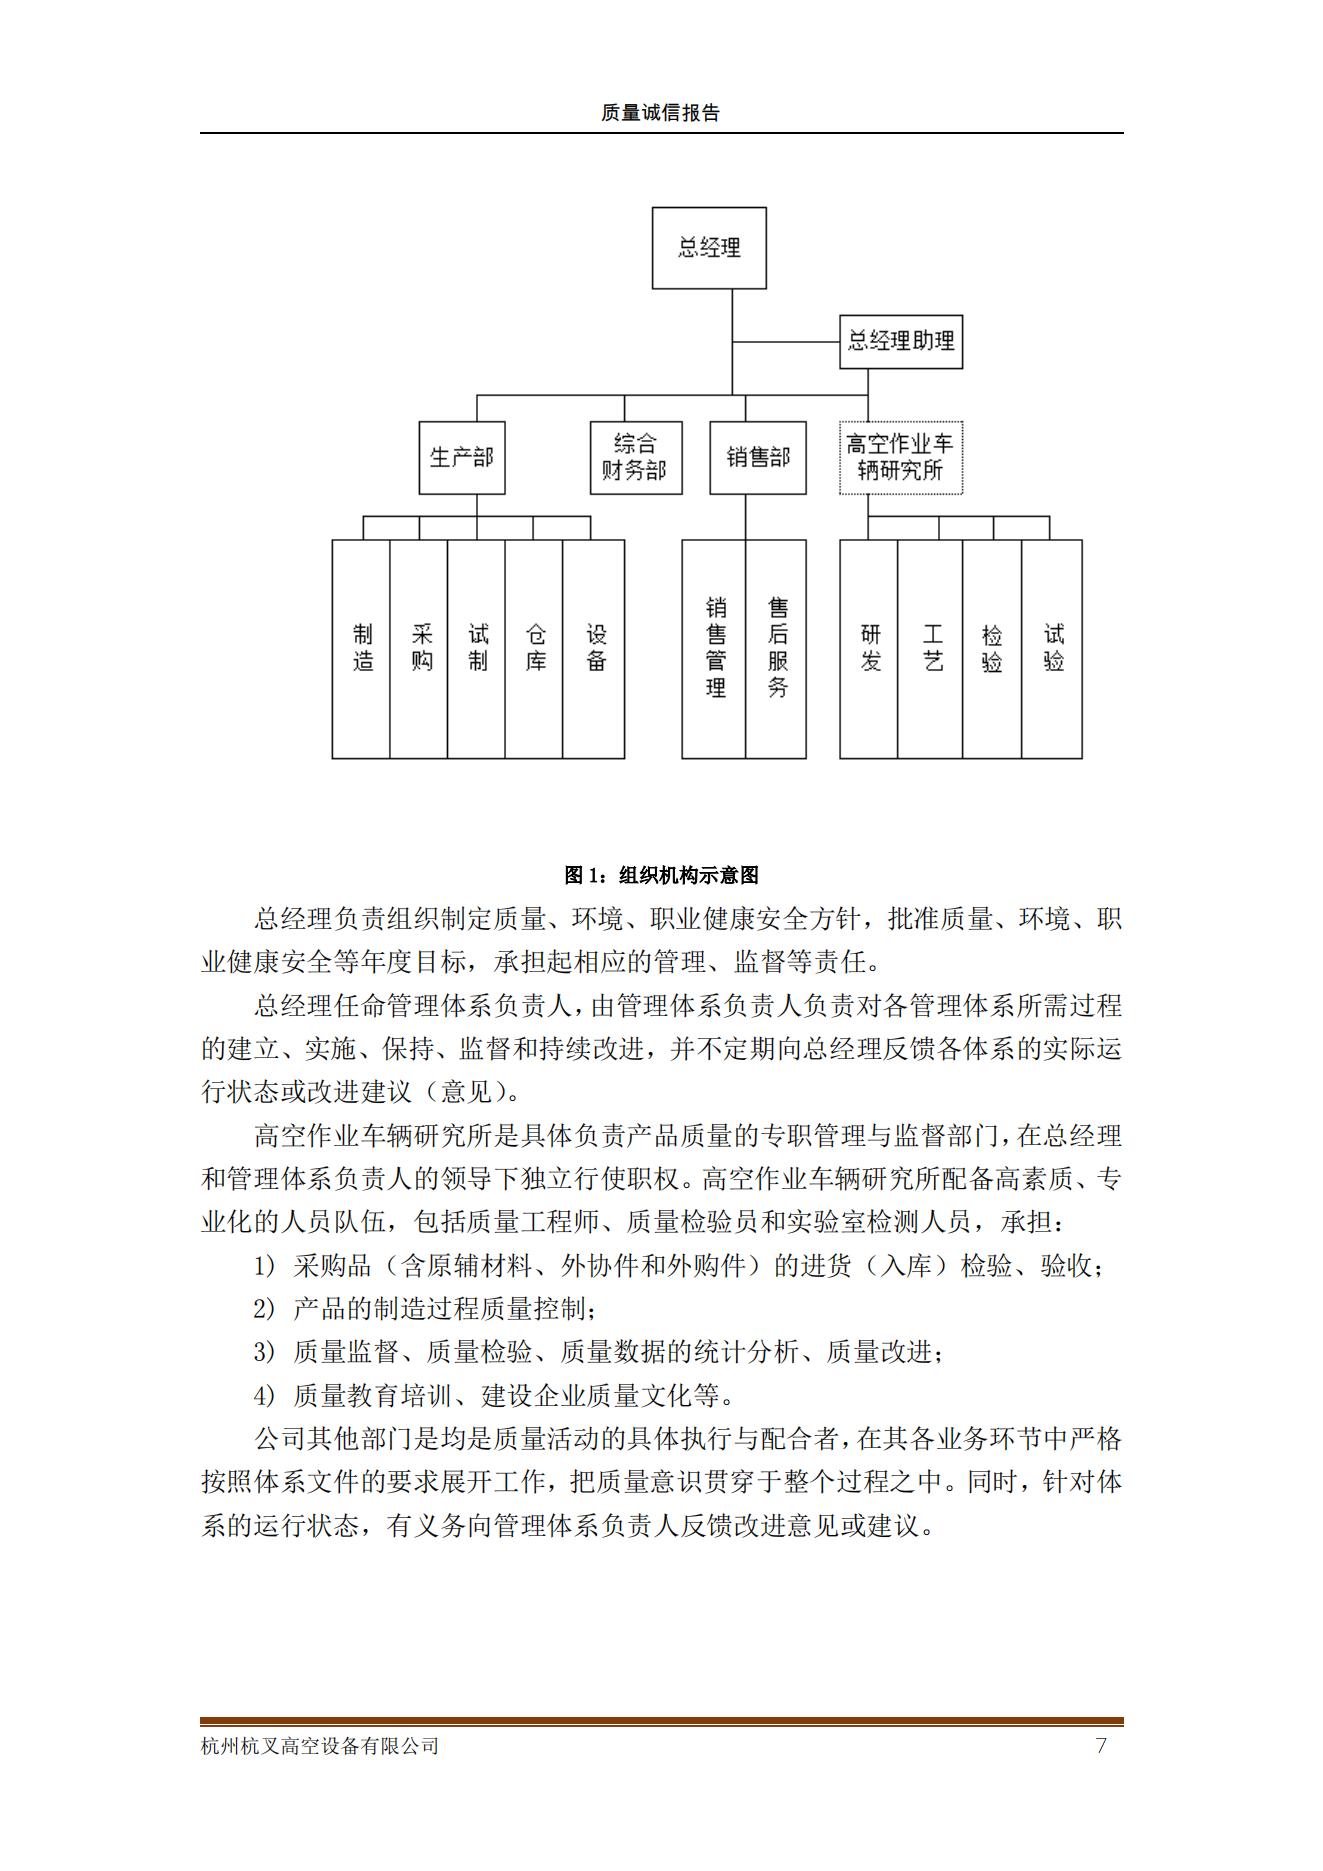 杭州杭叉高空设备公司2021年质量诚信报告(图7)